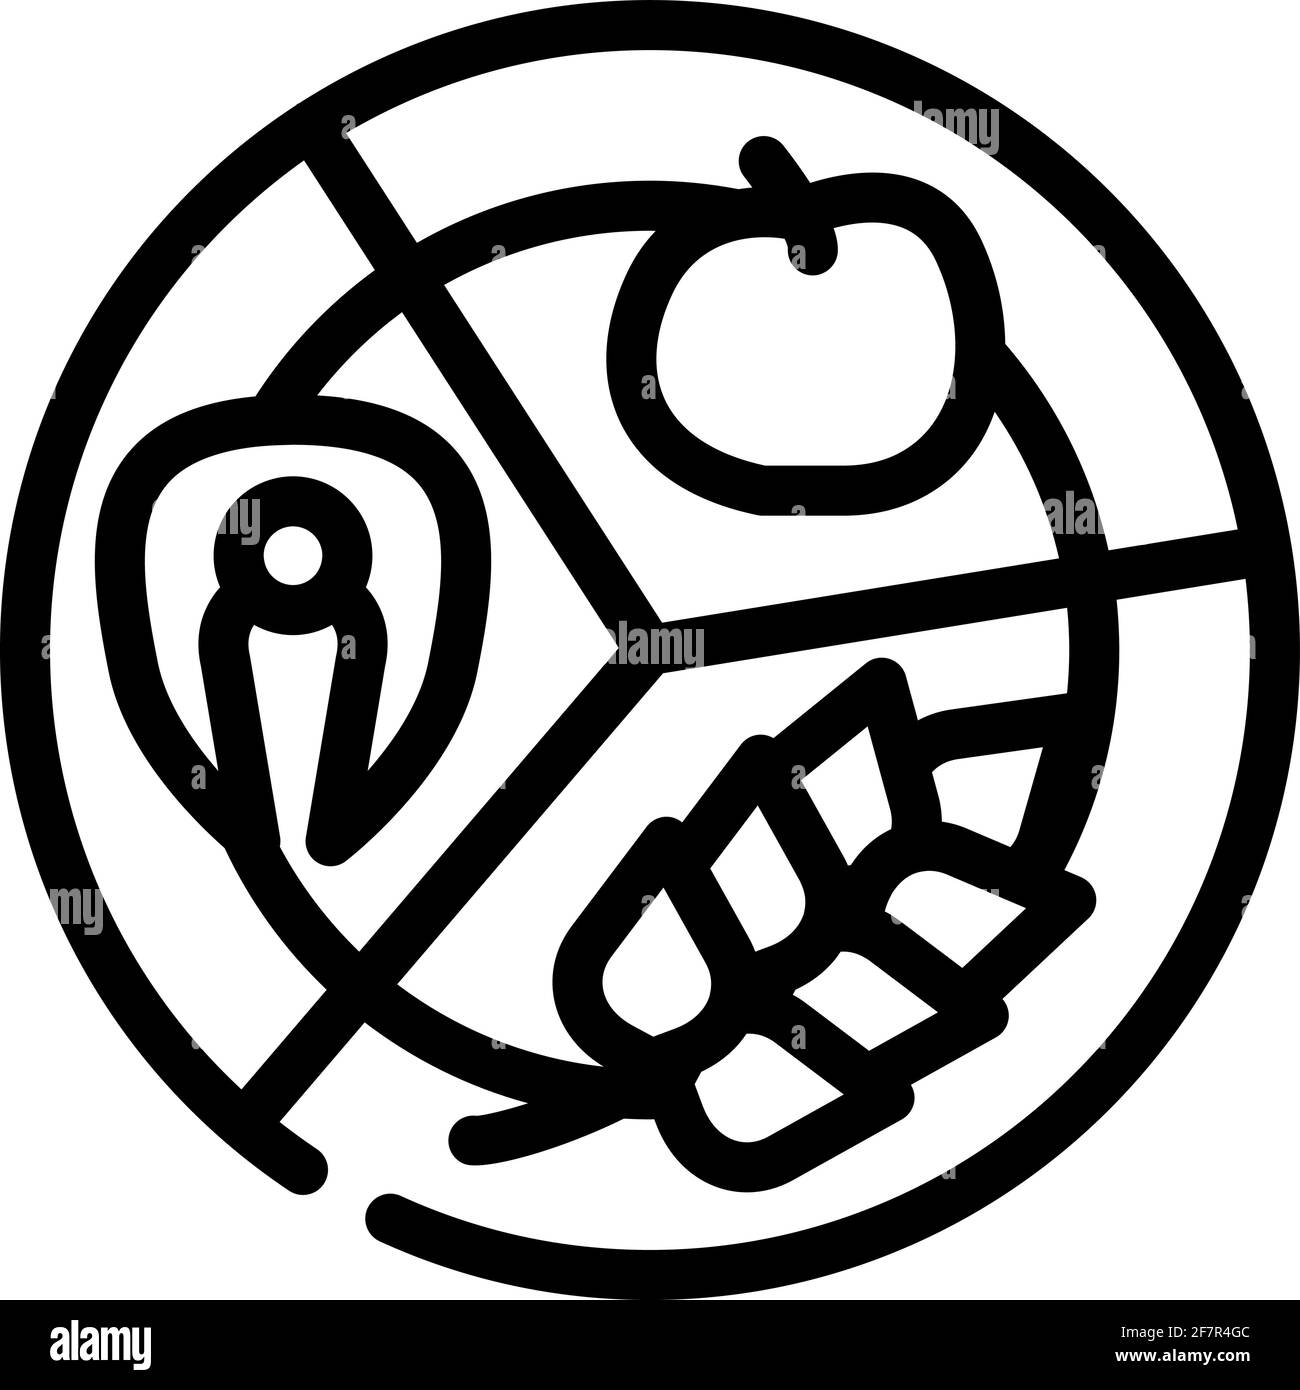 immagine vettoriale dell'icona della linea alimentare separata nera Illustrazione Vettoriale